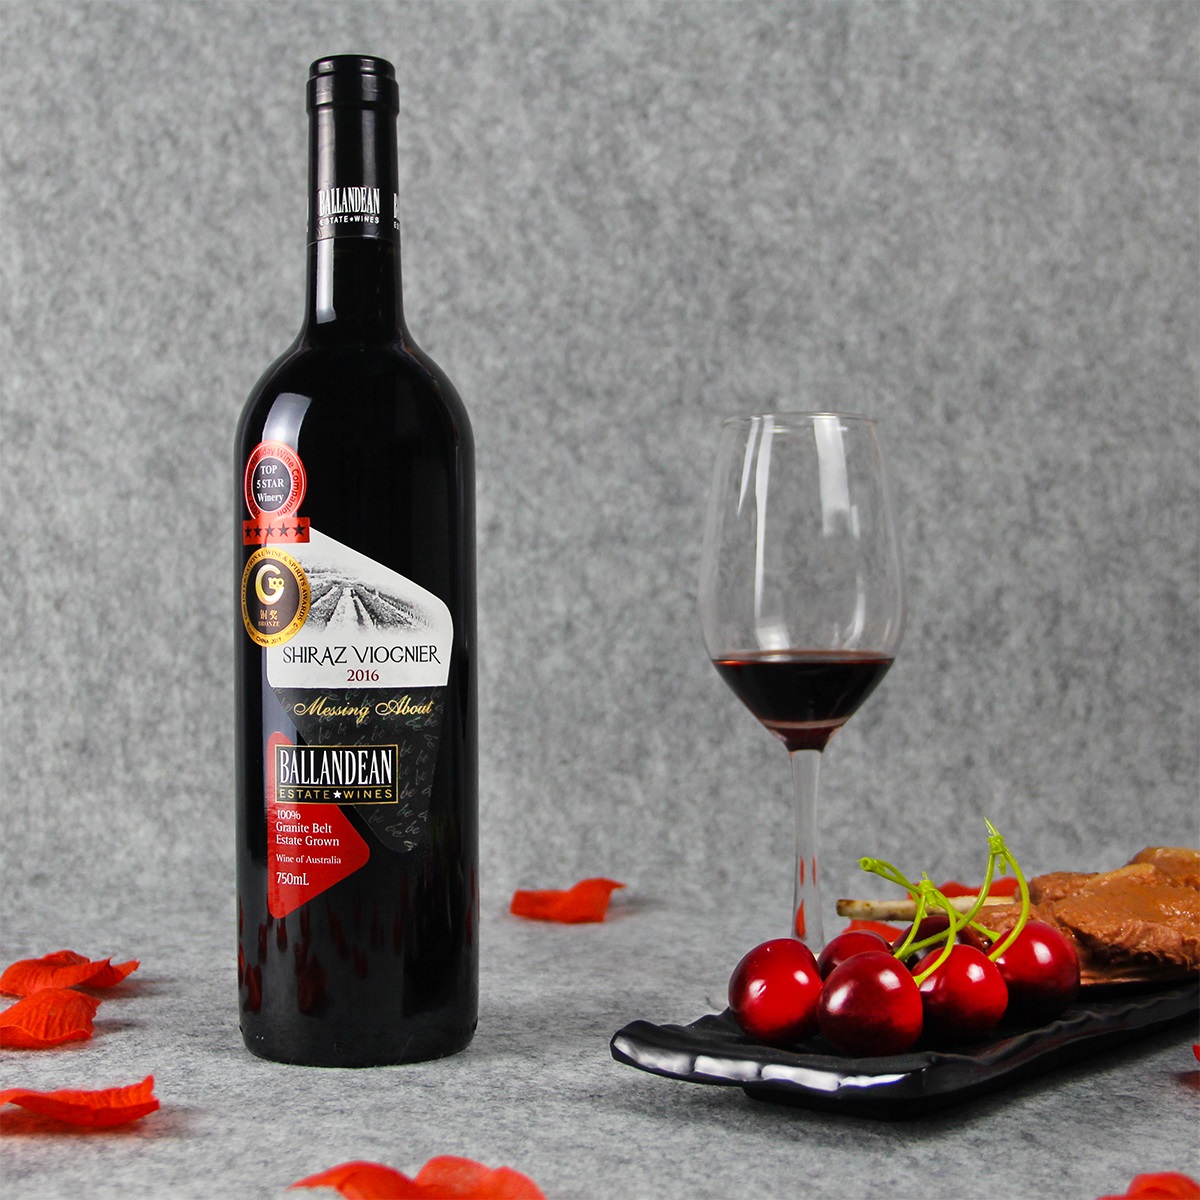 澳大利亚格兰纳特贝尔巴伦丁酒庄西拉维欧尼干红葡萄酒红酒